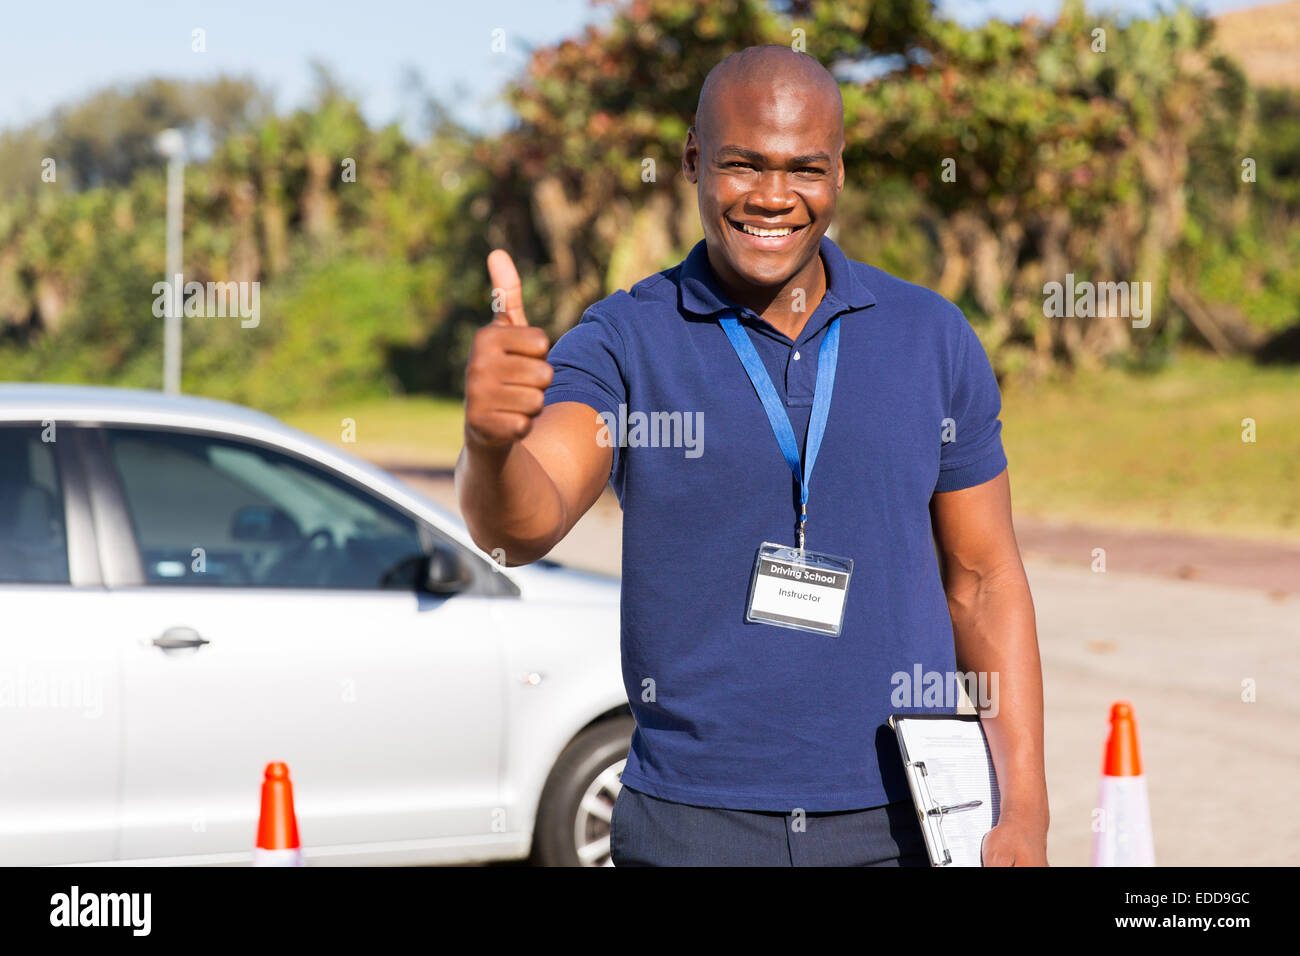 Beau portrait de moniteur auto école africaine giving thumb up Banque D'Images